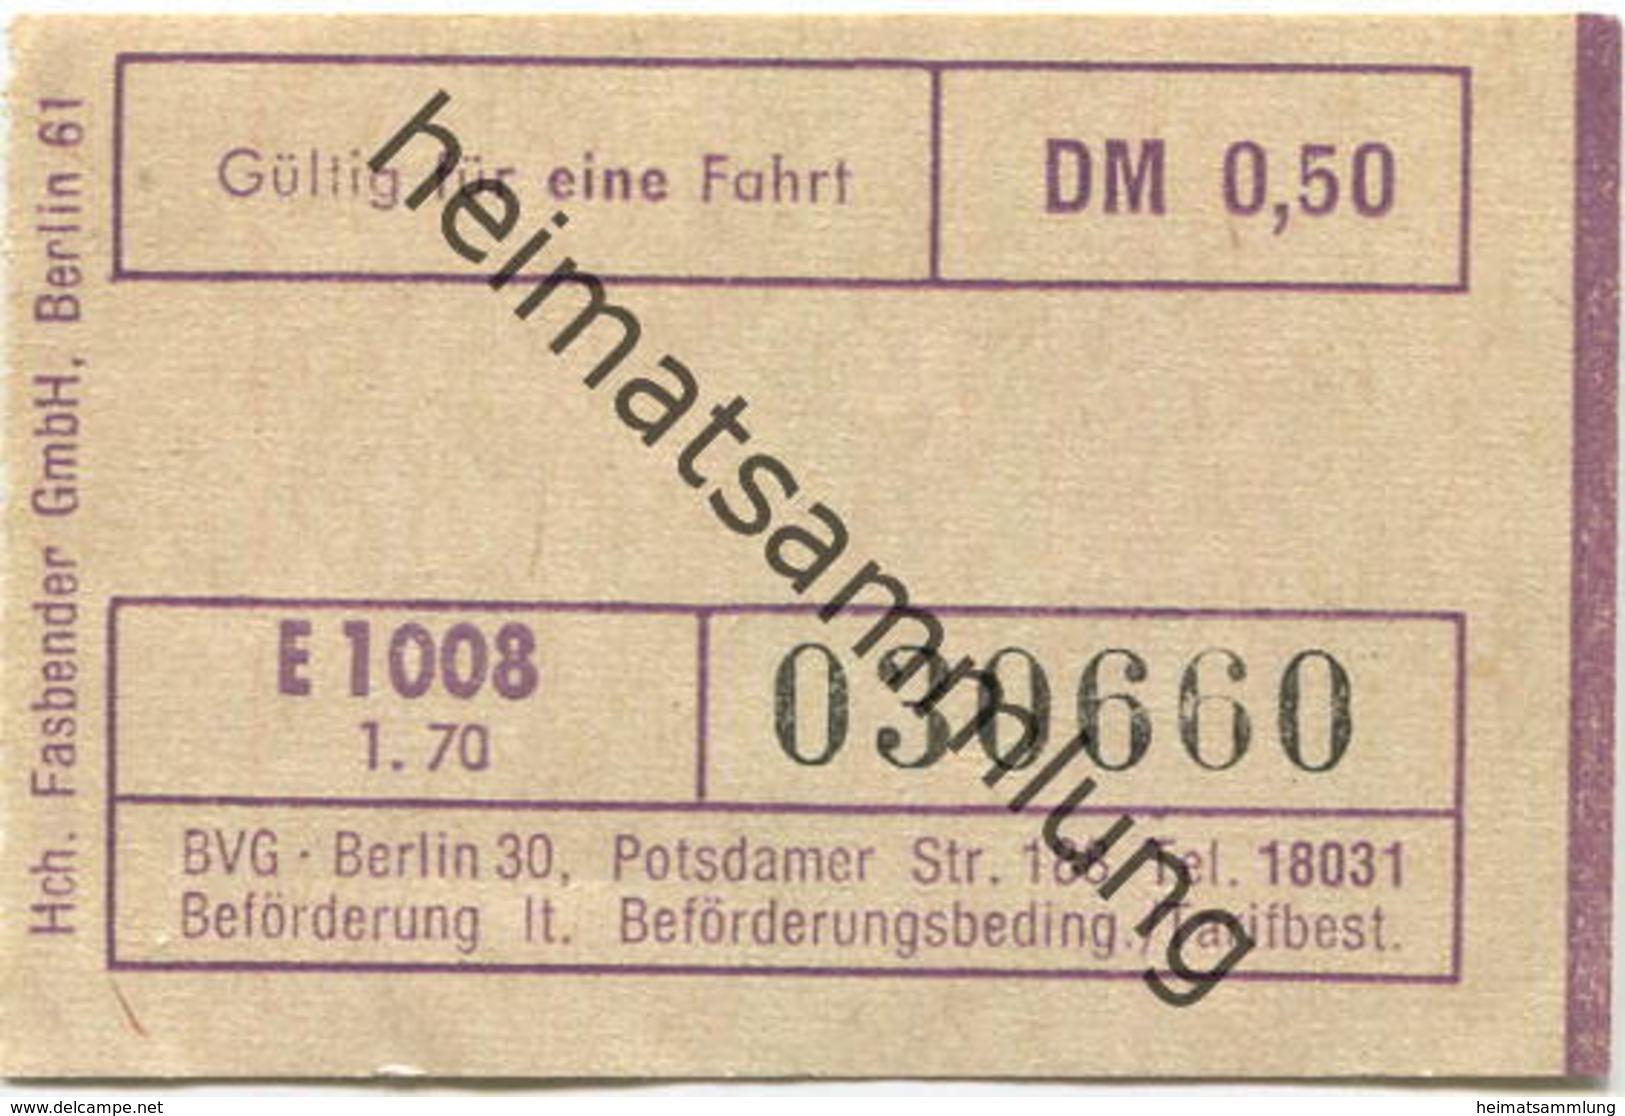 Deutschland - Berlin - BVG - Fahrschein 1970 DM 0,50 - Europe